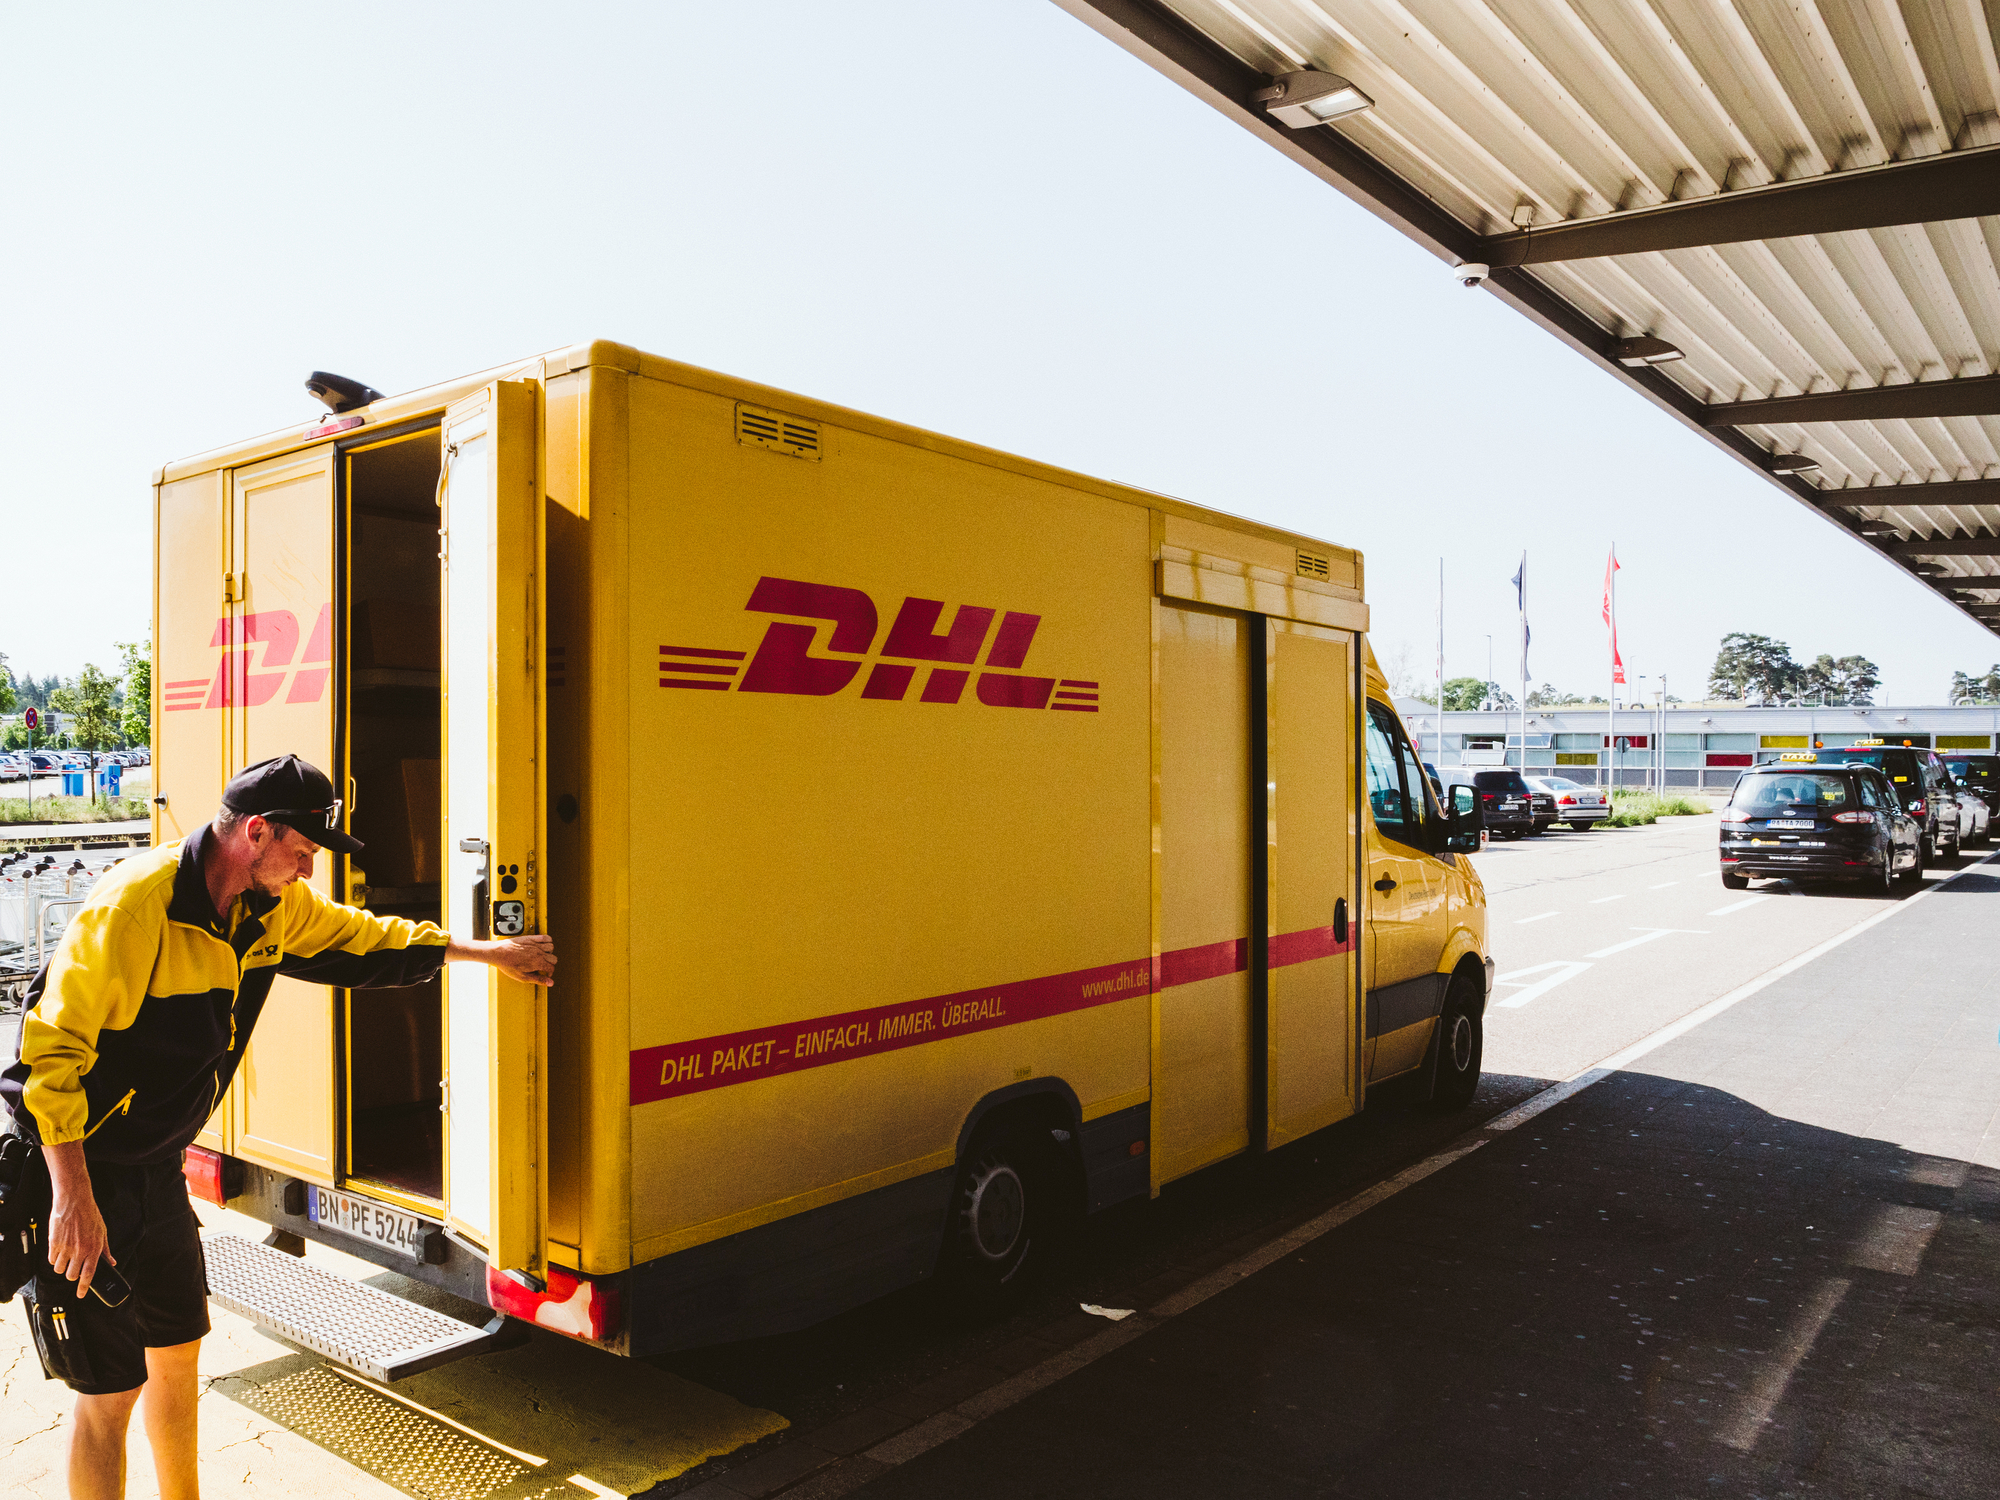 «Новая Почта» в Европе способна конкурировать с DHL. Об экспортном потенциале украинских сервисов и товаров